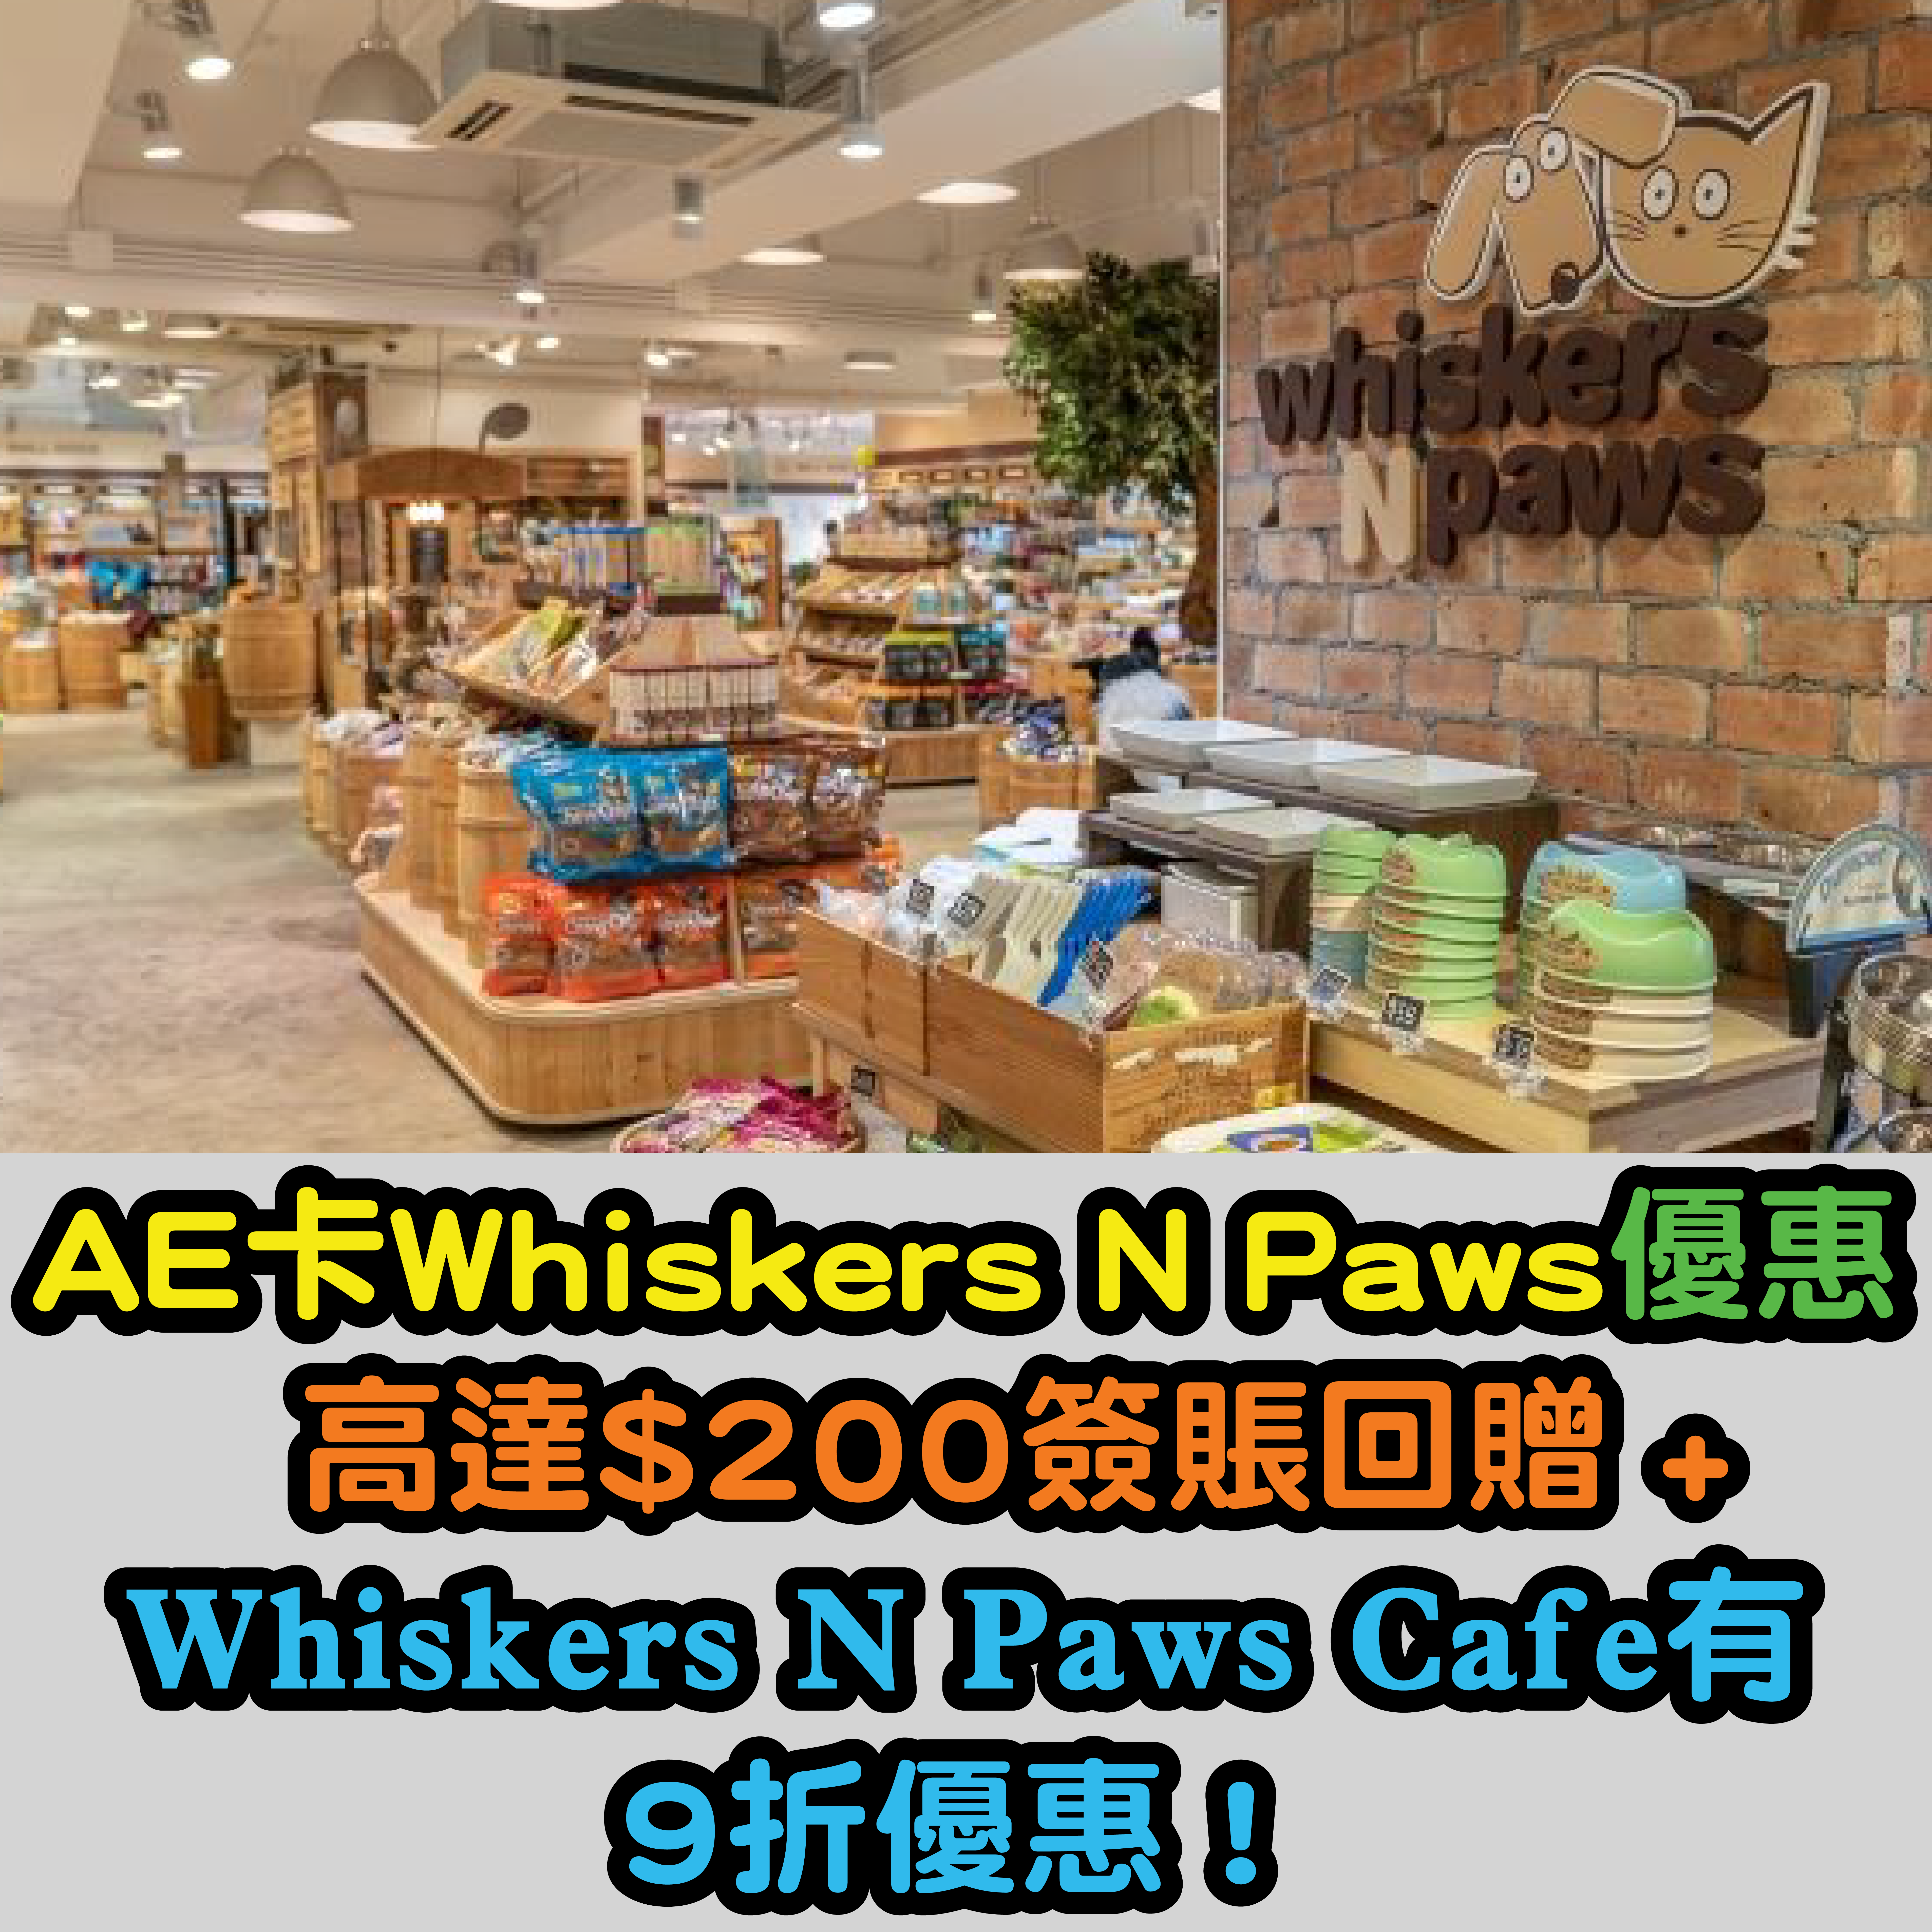 【AE卡Whiskers N Paws優惠】有高達$200簽賬回贈 + 於Whiskers N Paws Café可享9折優惠！